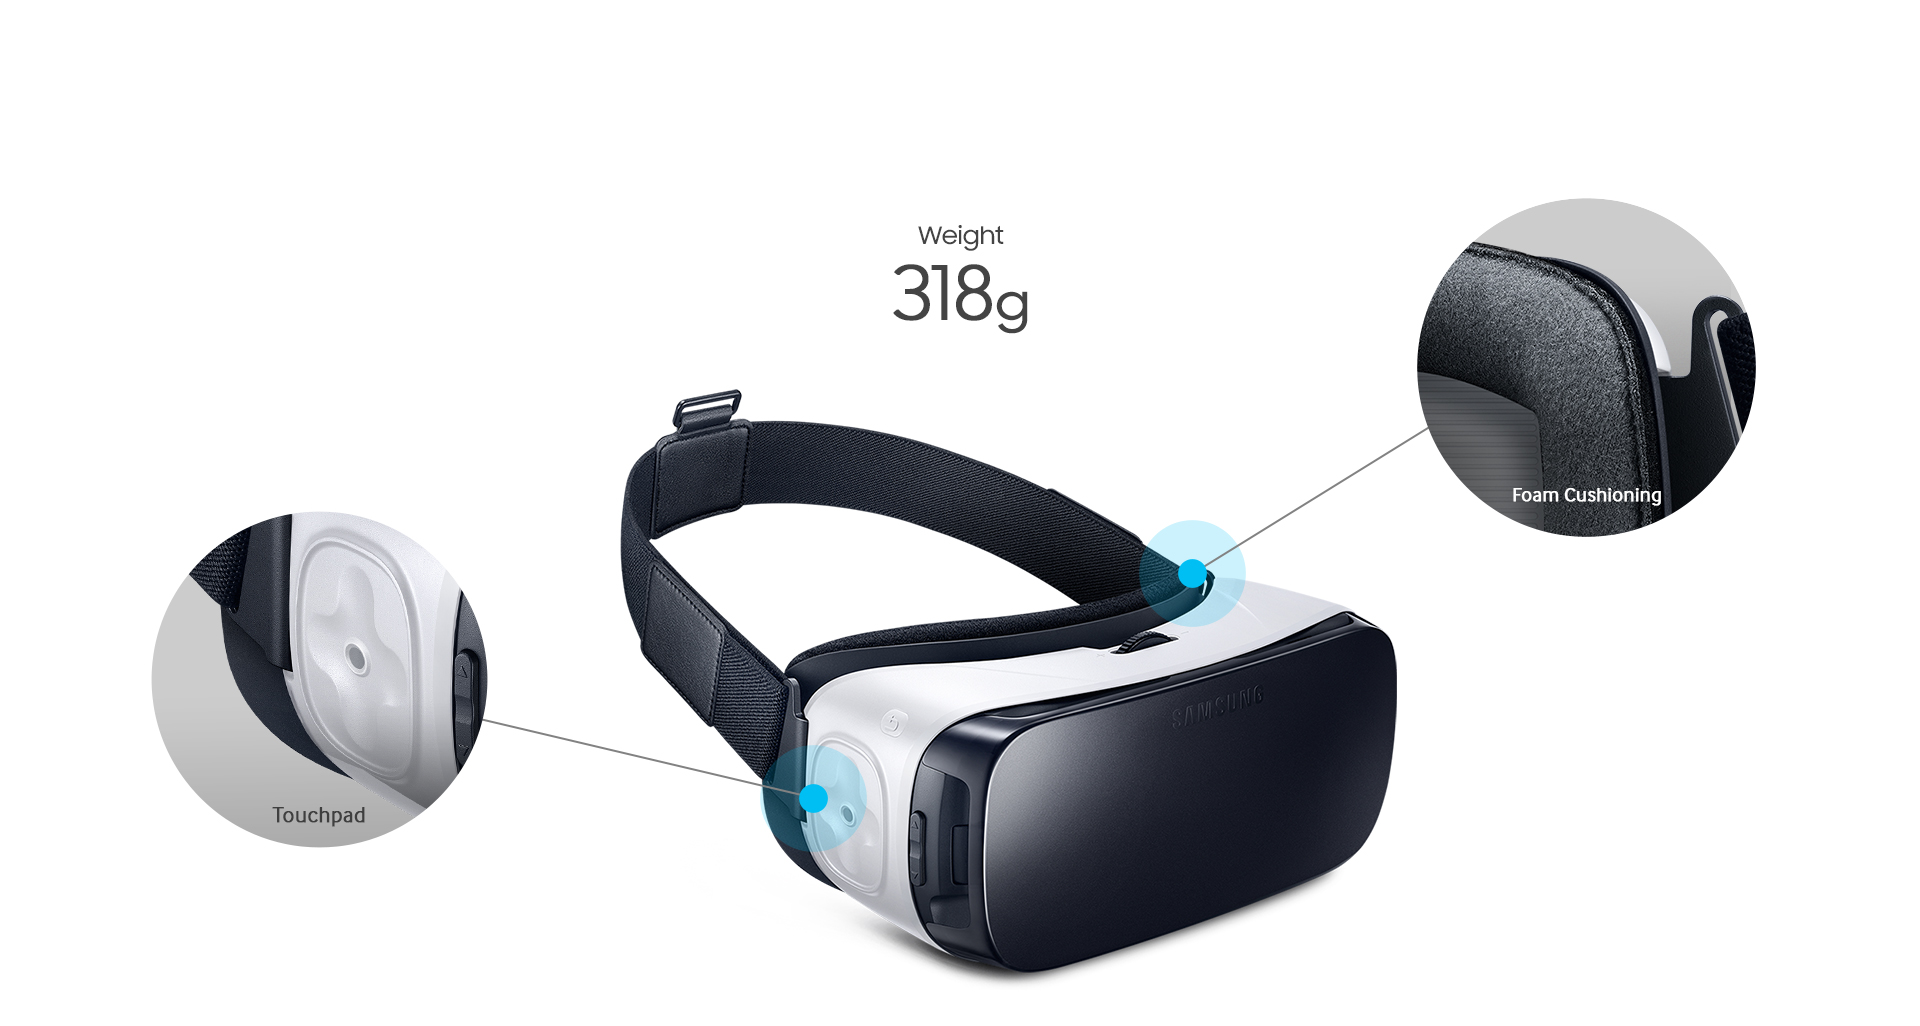 nuevas gafas Gear VR son ahora un 19% más ligeras - 318 g